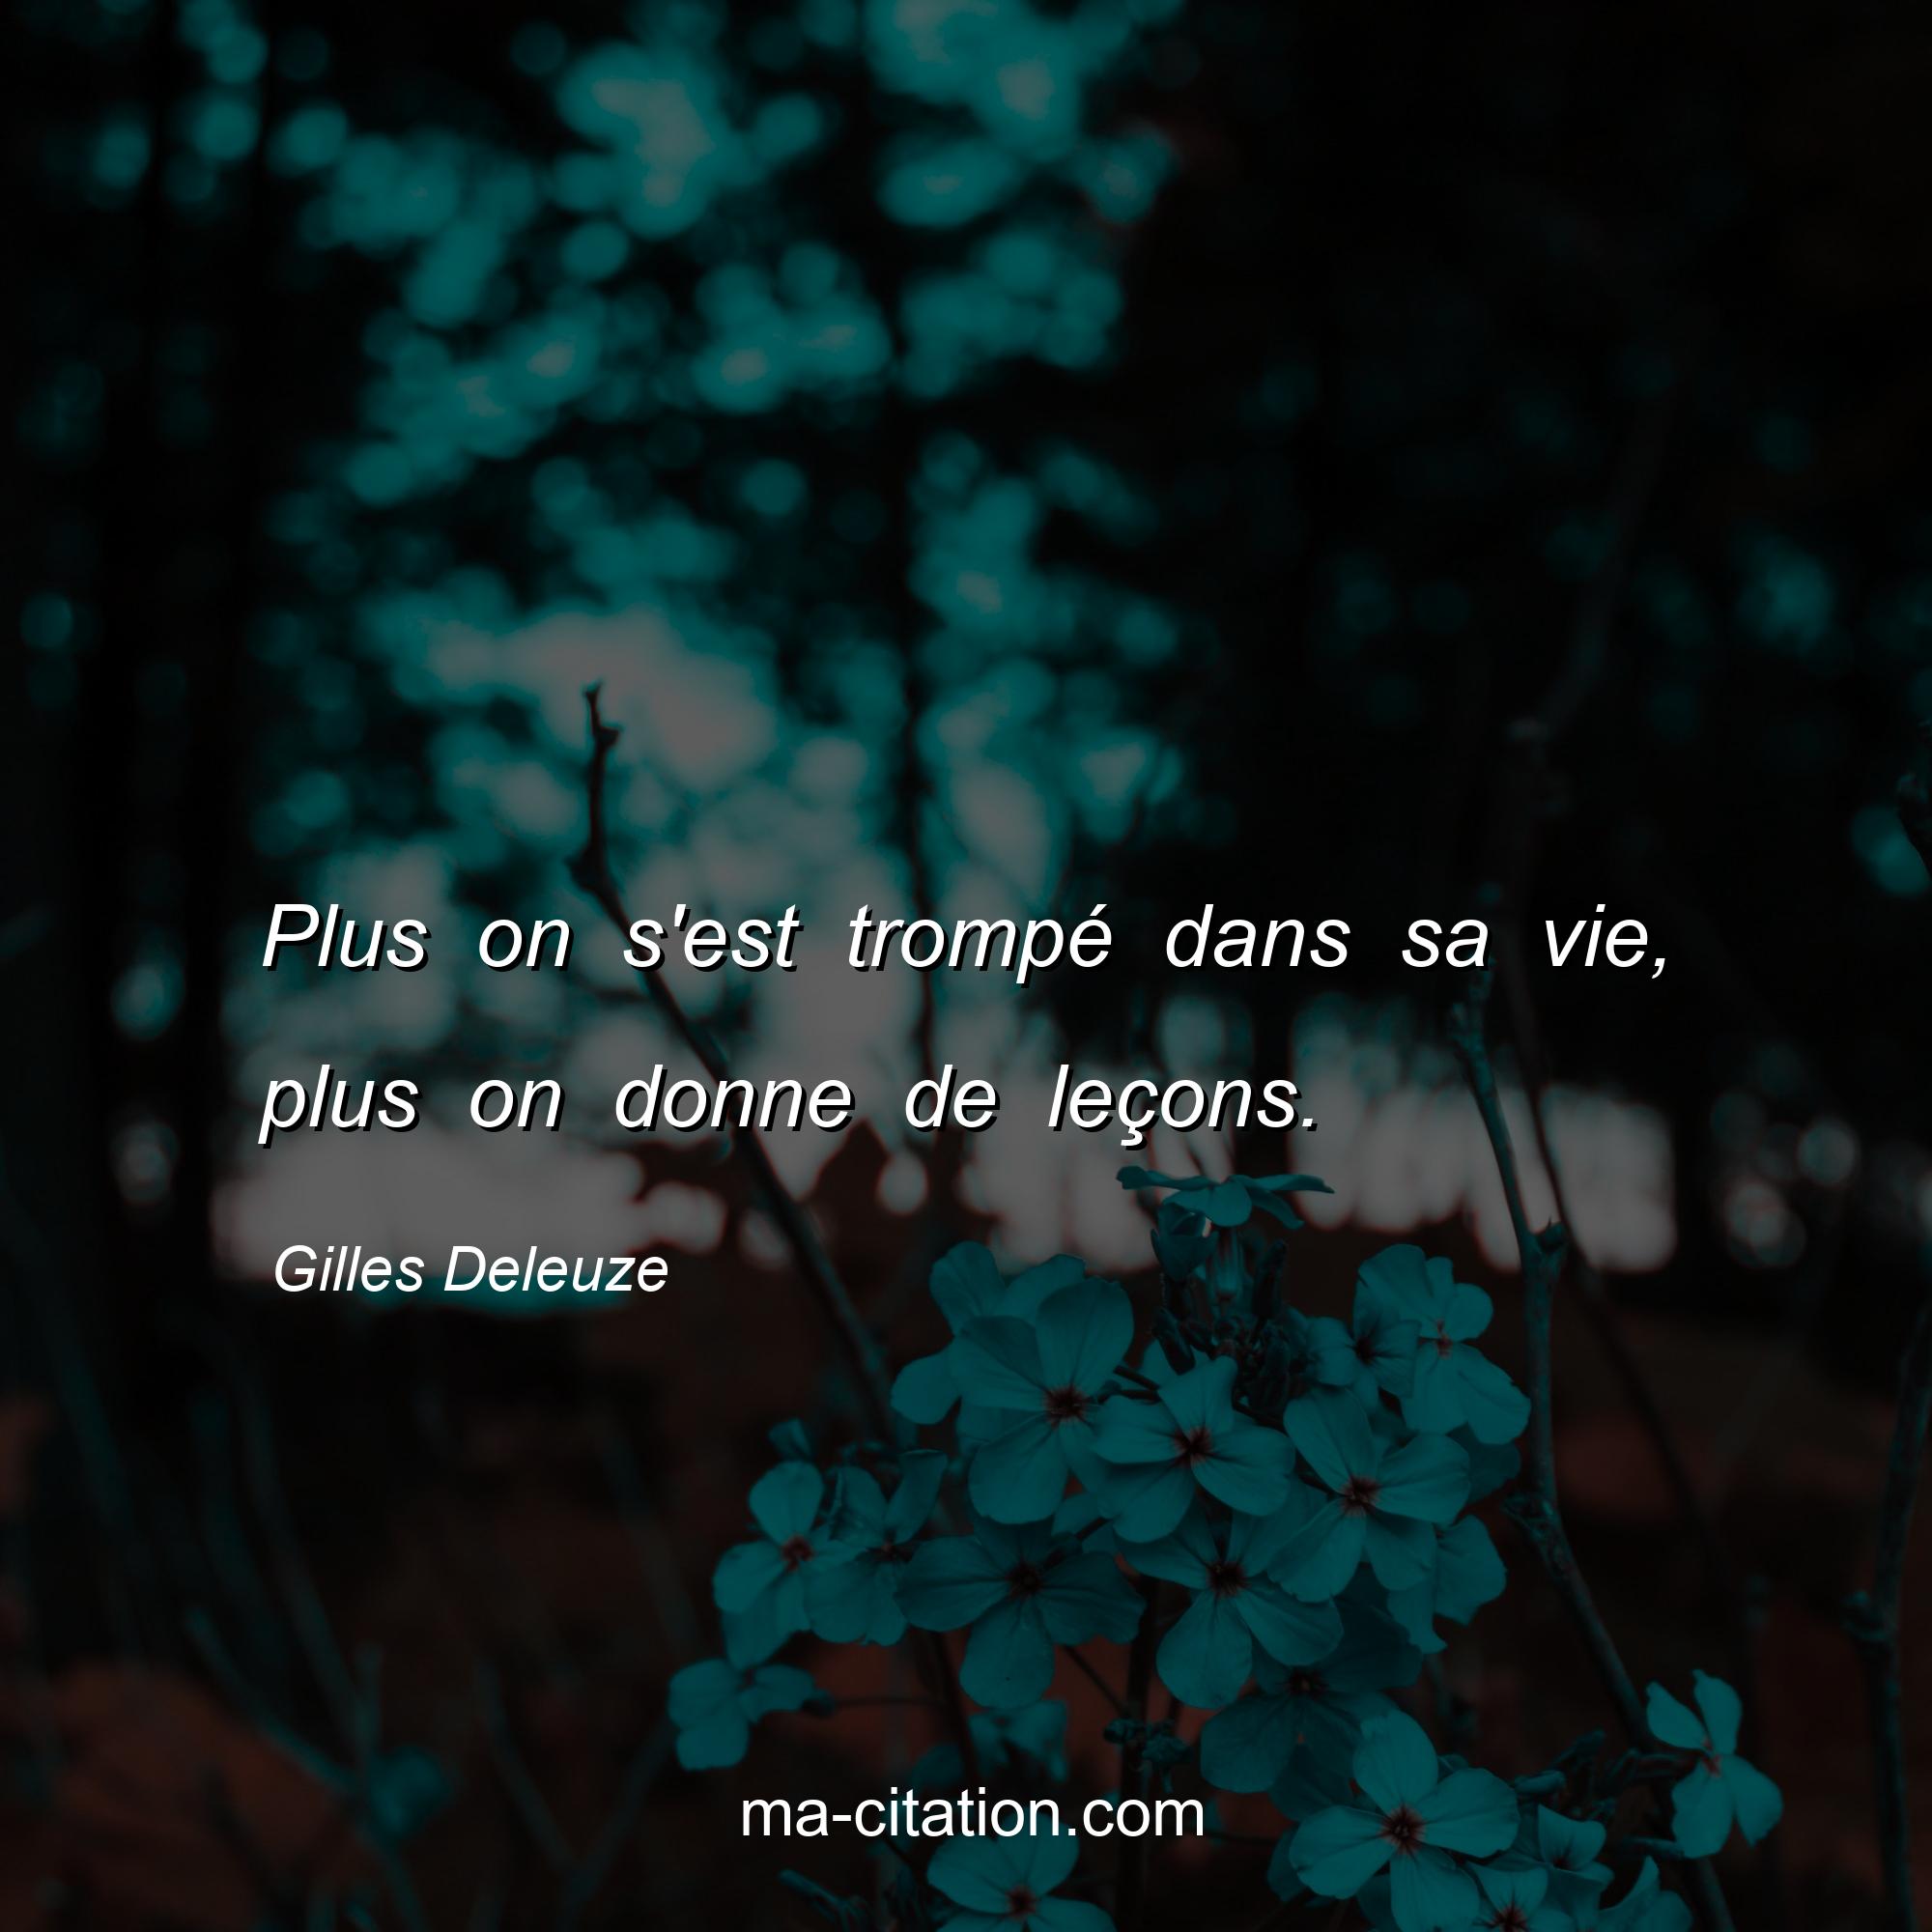 Gilles Deleuze : Plus on s'est trompé dans sa vie, plus on donne de leçons.